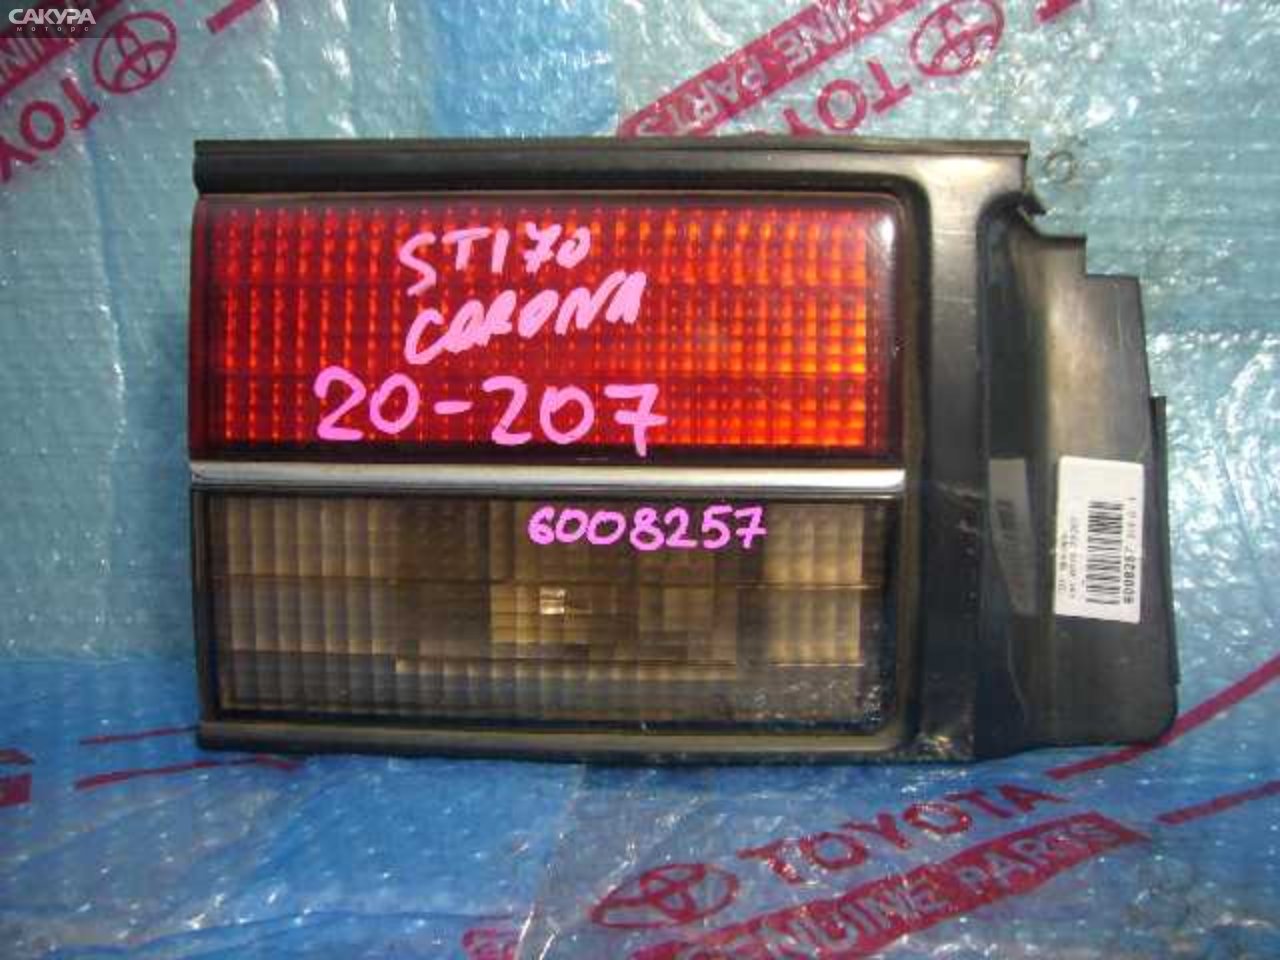 Фонарь вставка багажника левый Toyota Corona ST170 20-207: купить в Сакура Кемерово.